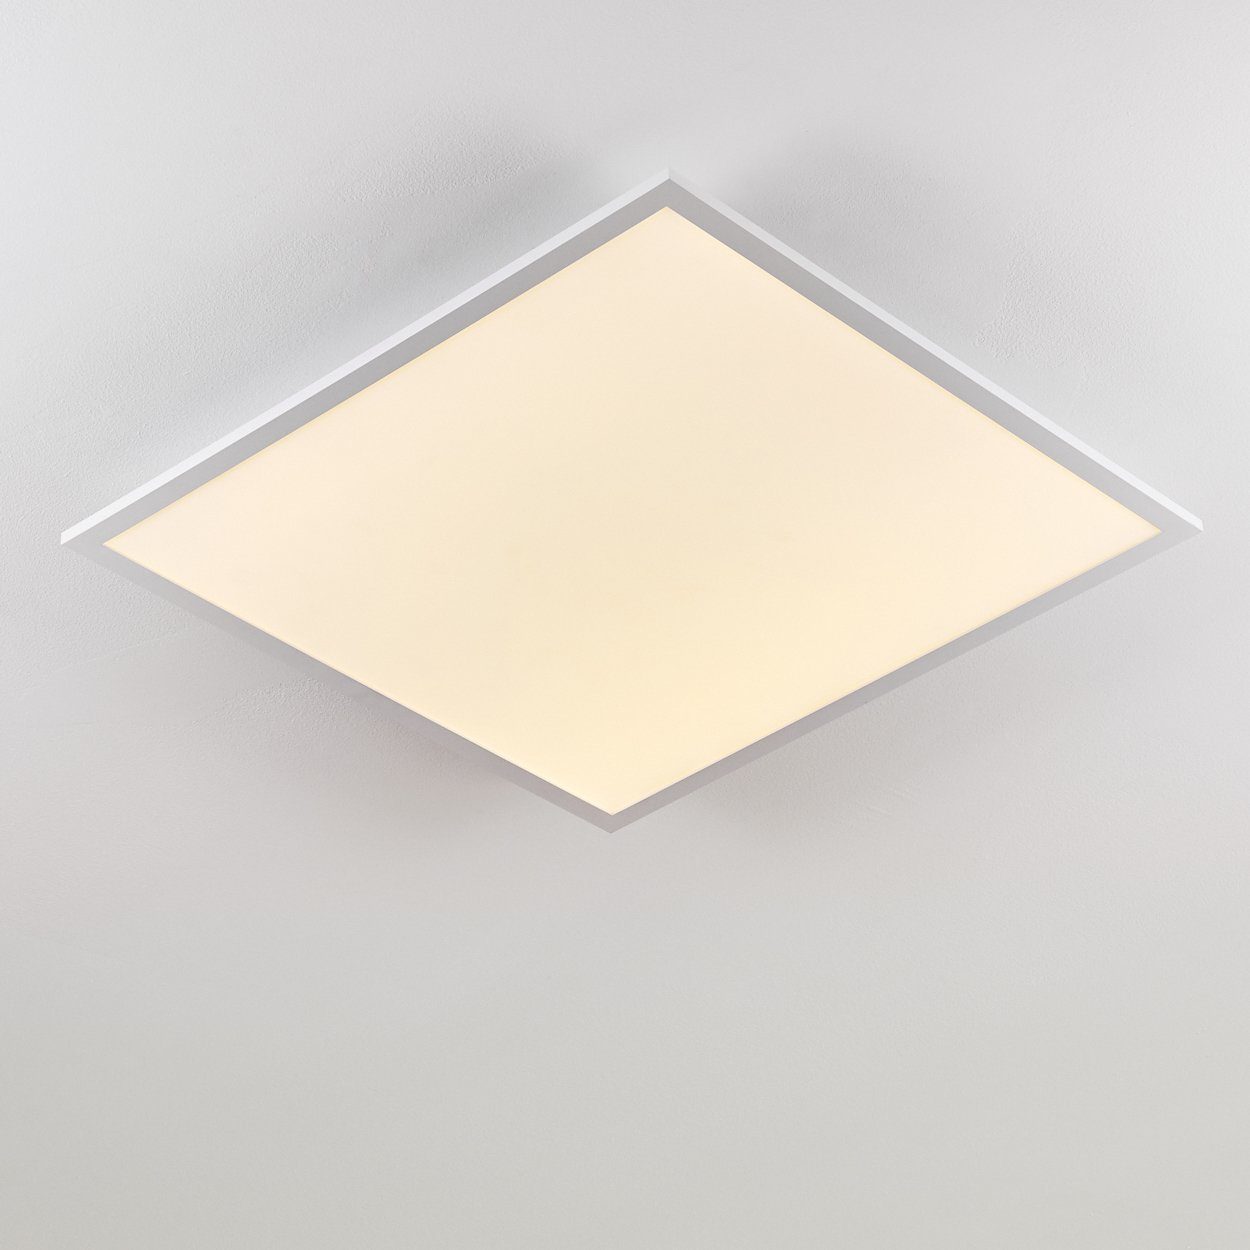 Weiß, Panel modernes hofstein Lumen, 40 Deckenpanel LED Kelvin, 4800 eckige 3000 in flachem »Vacil« Watt, Deckenlampe Aluminiumin aus Panel Design